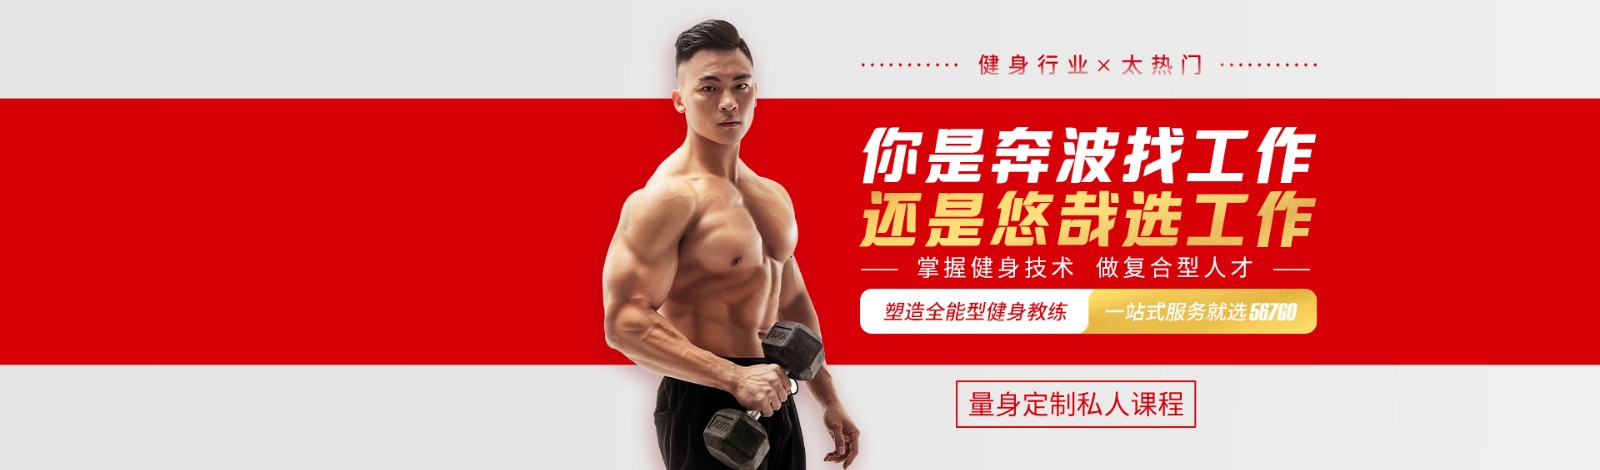 广州567GO健身学院 横幅广告